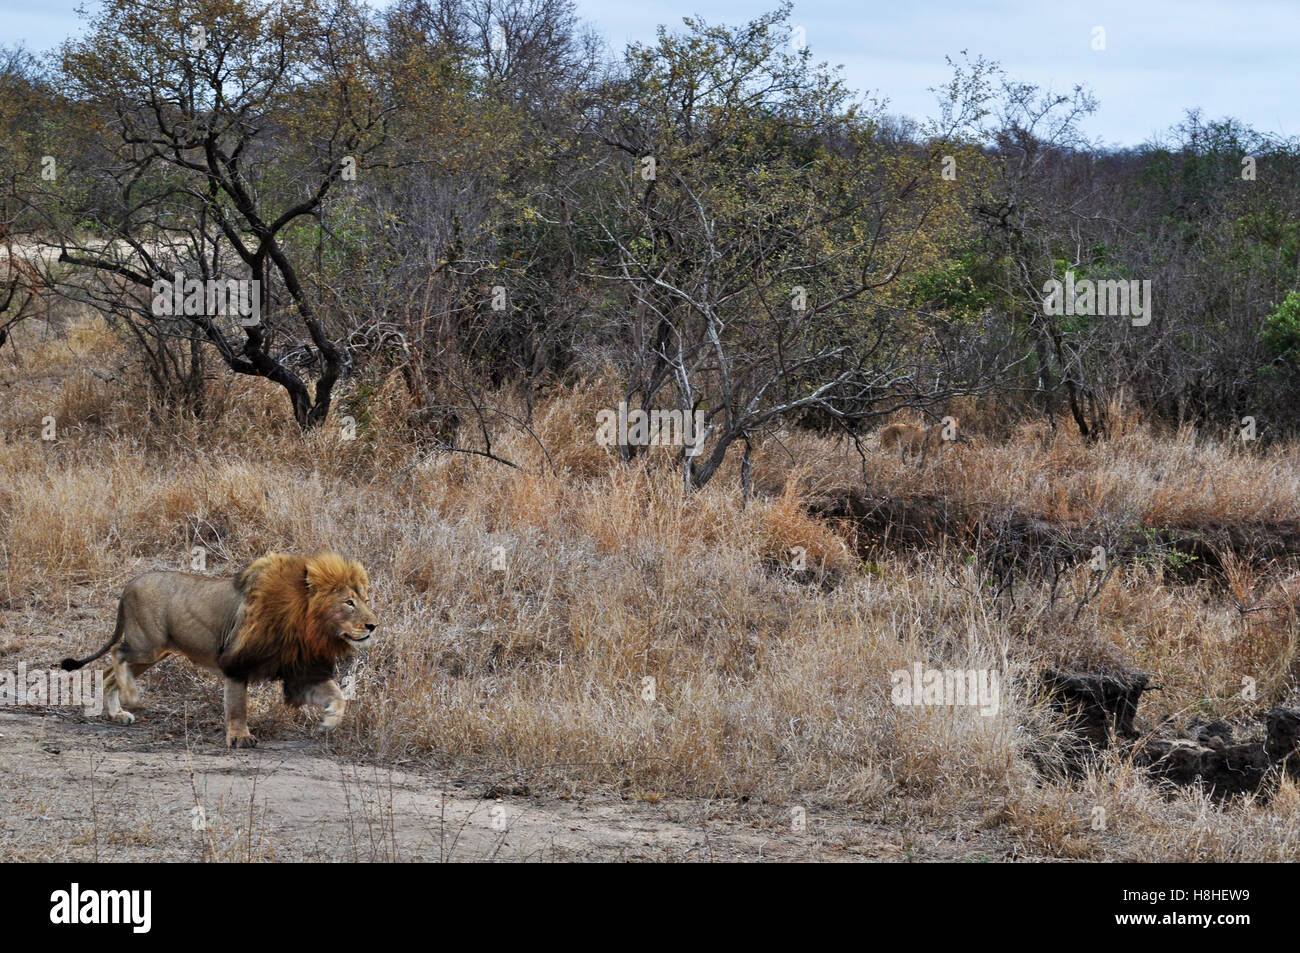 Safari in Südafrika, Savannah: männlicher afrikanischer Löwe, der König des Waldes in den Kruger National Park, dem größten Naturschutzgebiet in Afrika seit 1898 Stockfoto